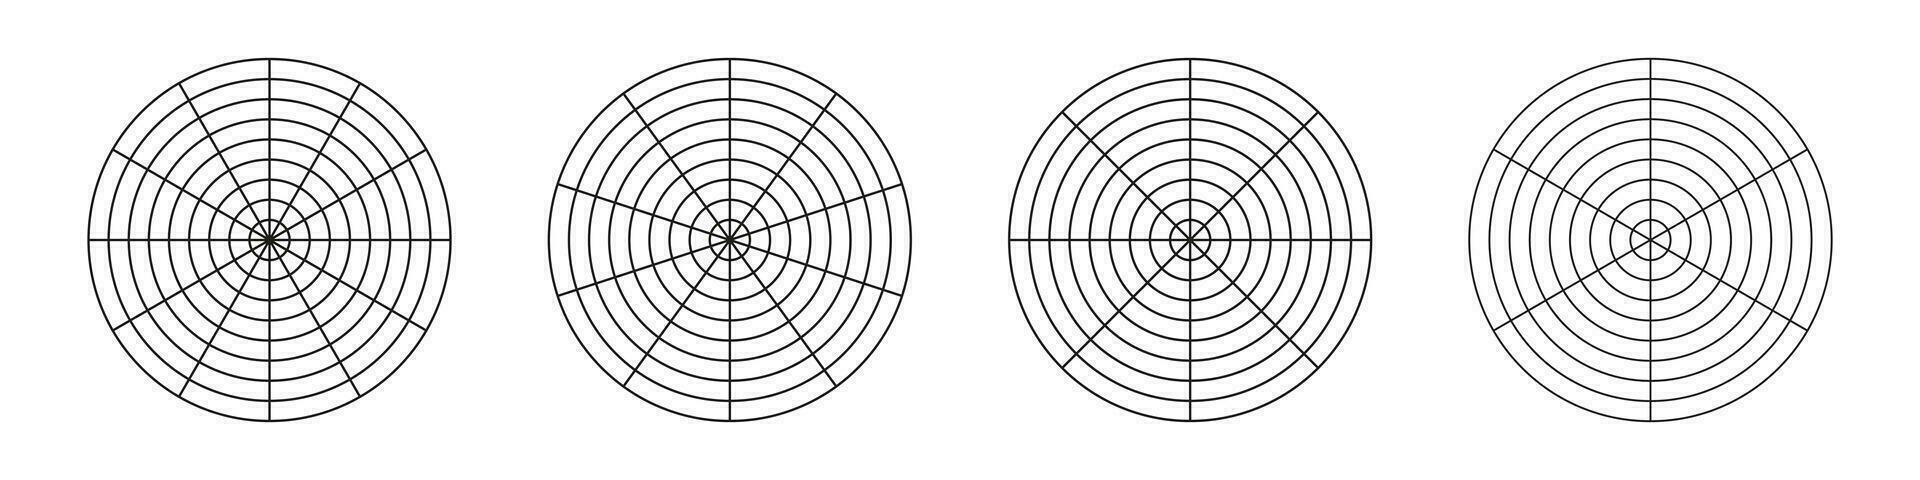 circulo diagramas de vida estilo balance. rueda de vida plantillas. entrenamiento herramienta para visualizante todas areas de vida. conjunto de polar cuadrícula con segmentos, concéntrico círculos blanco de polar grafico papel. vector